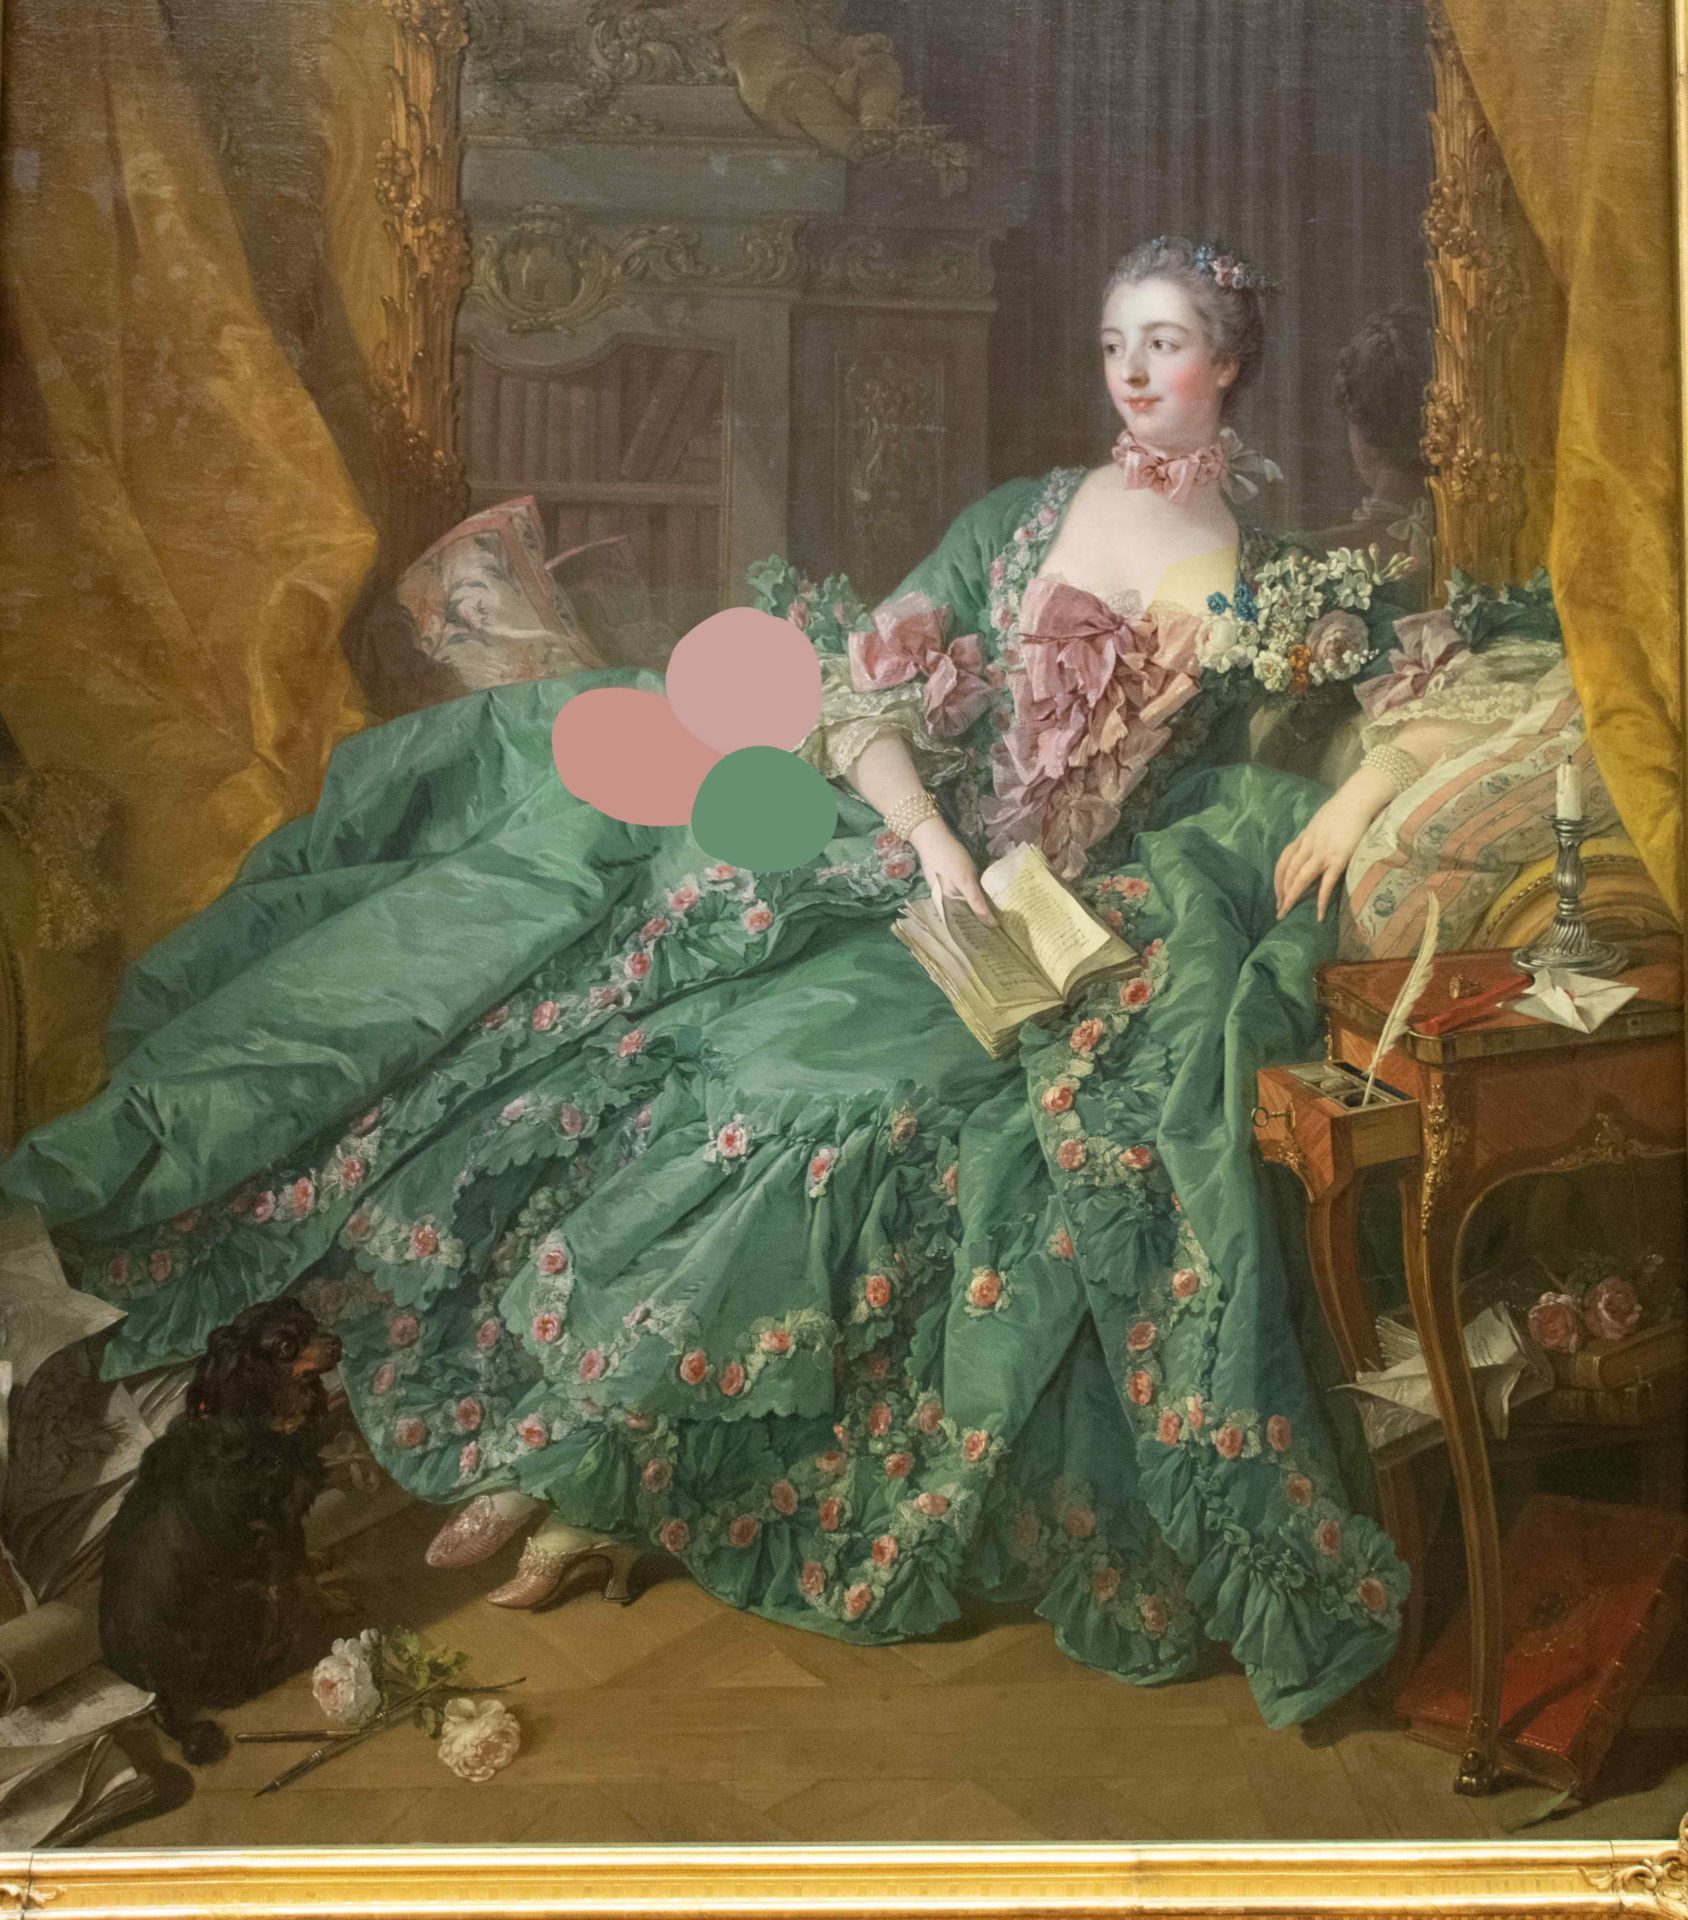 Madame de pompadour dress colors